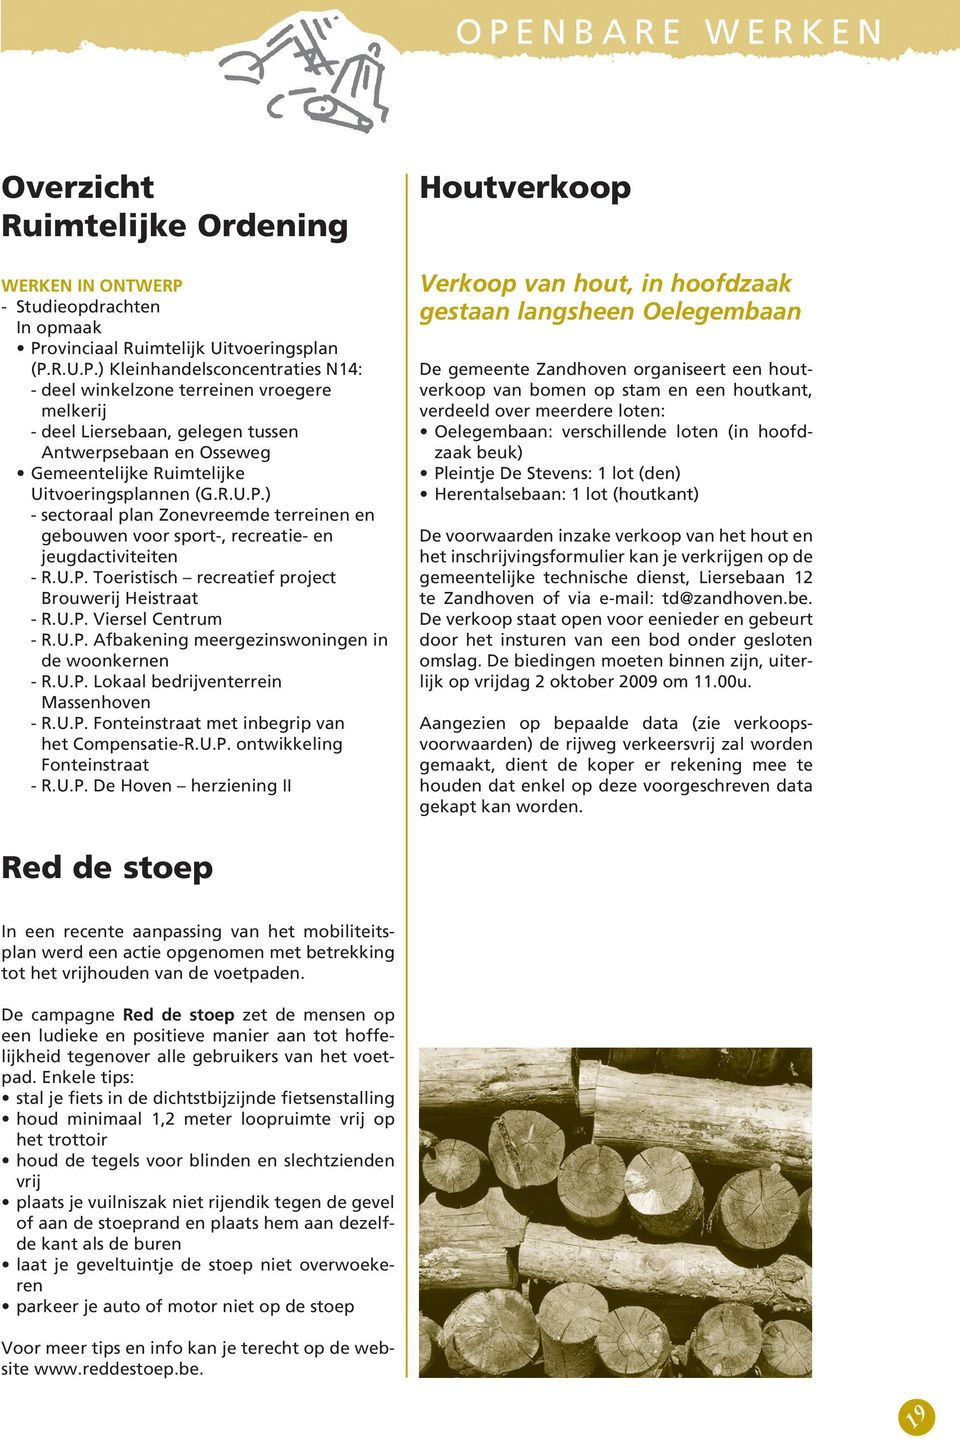 U.P. Lokaal bedrijventerrein Massenhoven - R.U.P. Fonteinstraat met inbegrip van het Compensatie-R.U.P. ontwikkeling Fonteinstraat - R.U.P. De Hoven herziening II Houtverkoop Verkoop van hout, in